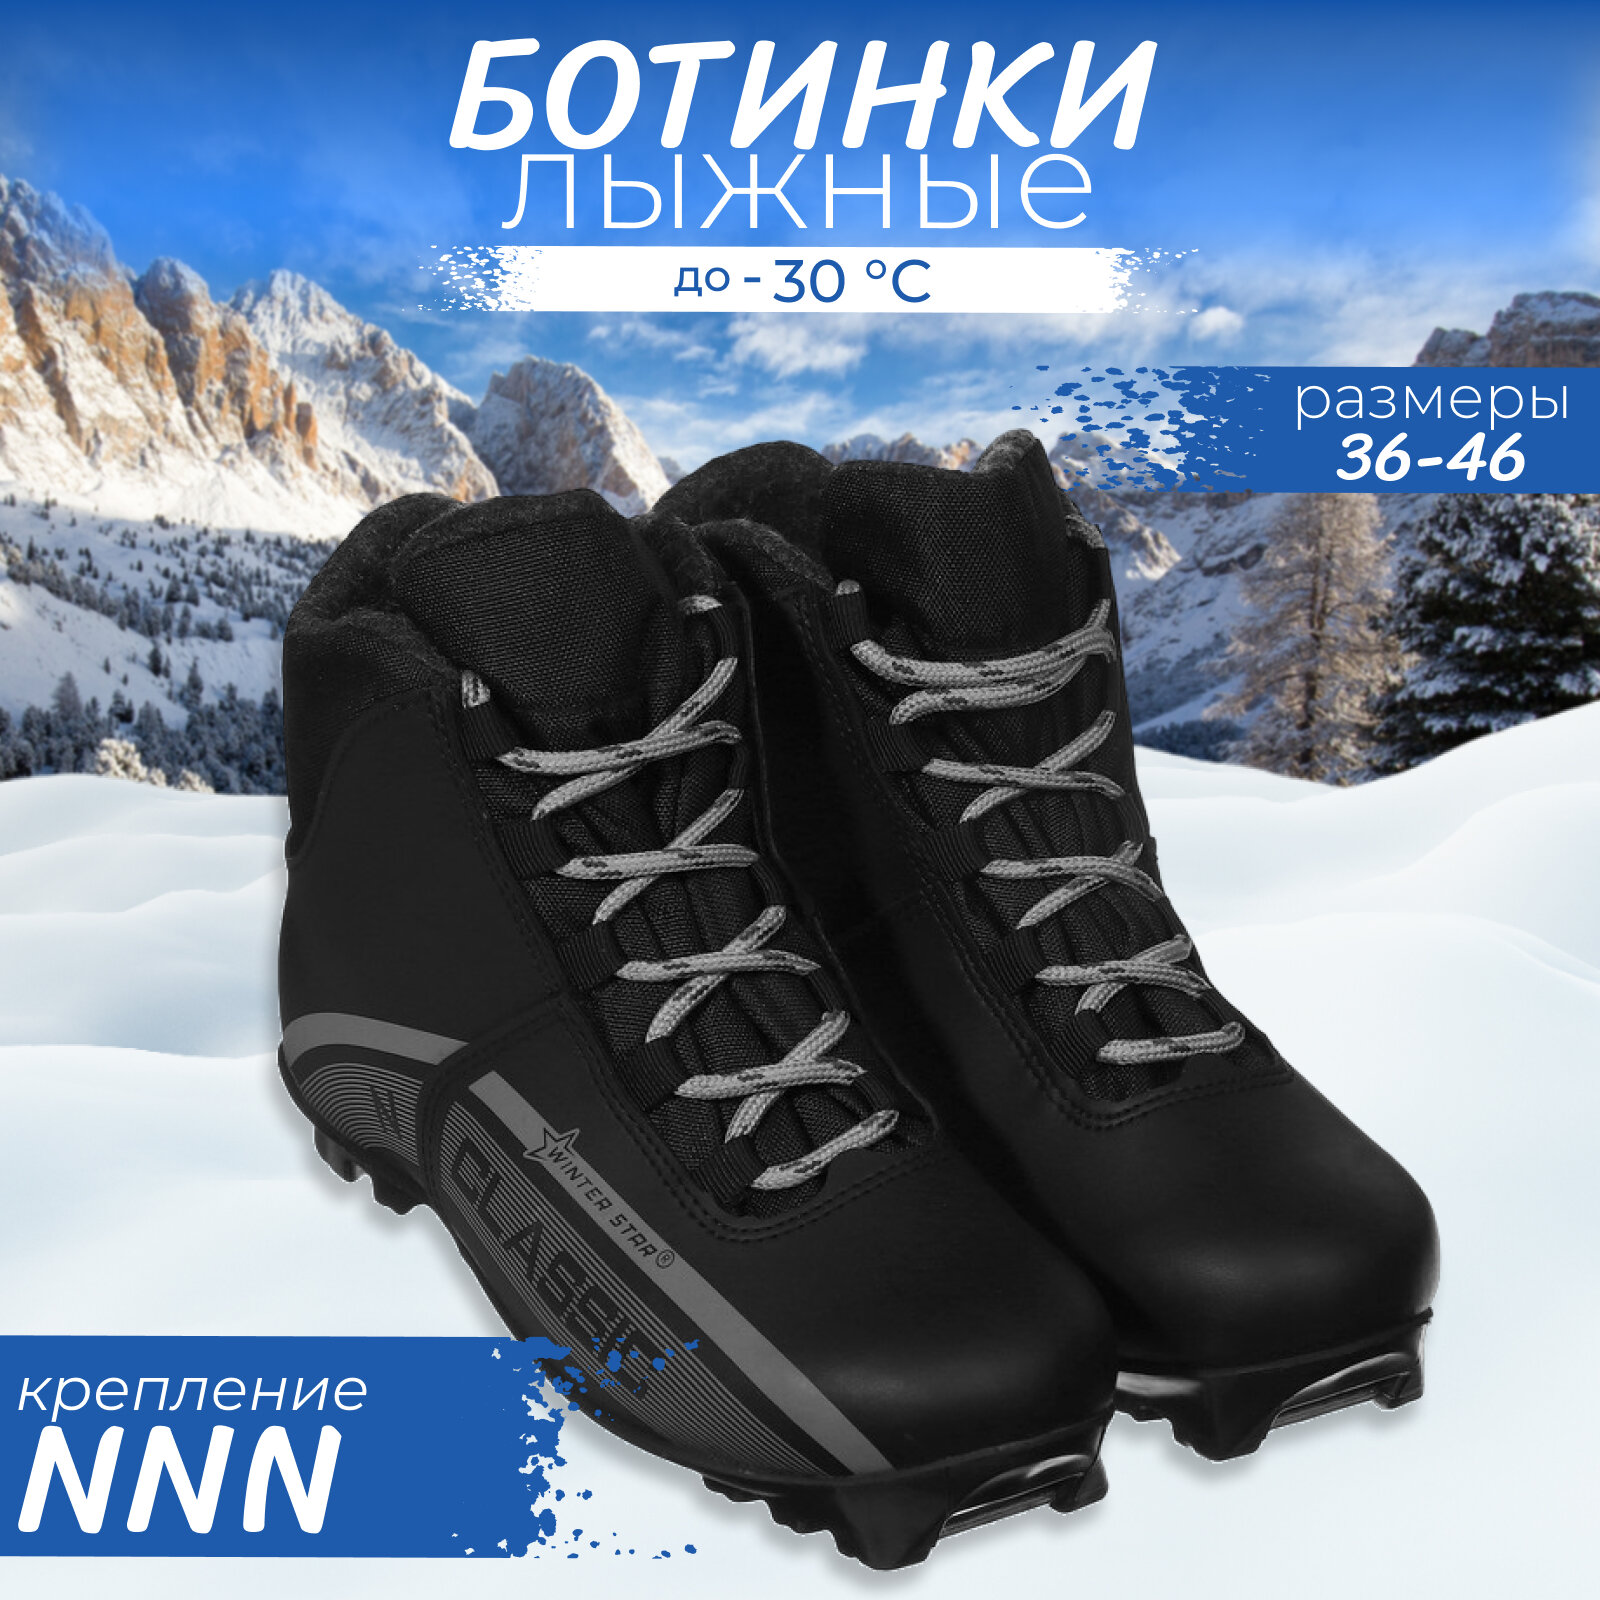 Ботинки лыжные Winter Star classic, NNN, р. 36, цвет чёрный, лого серый